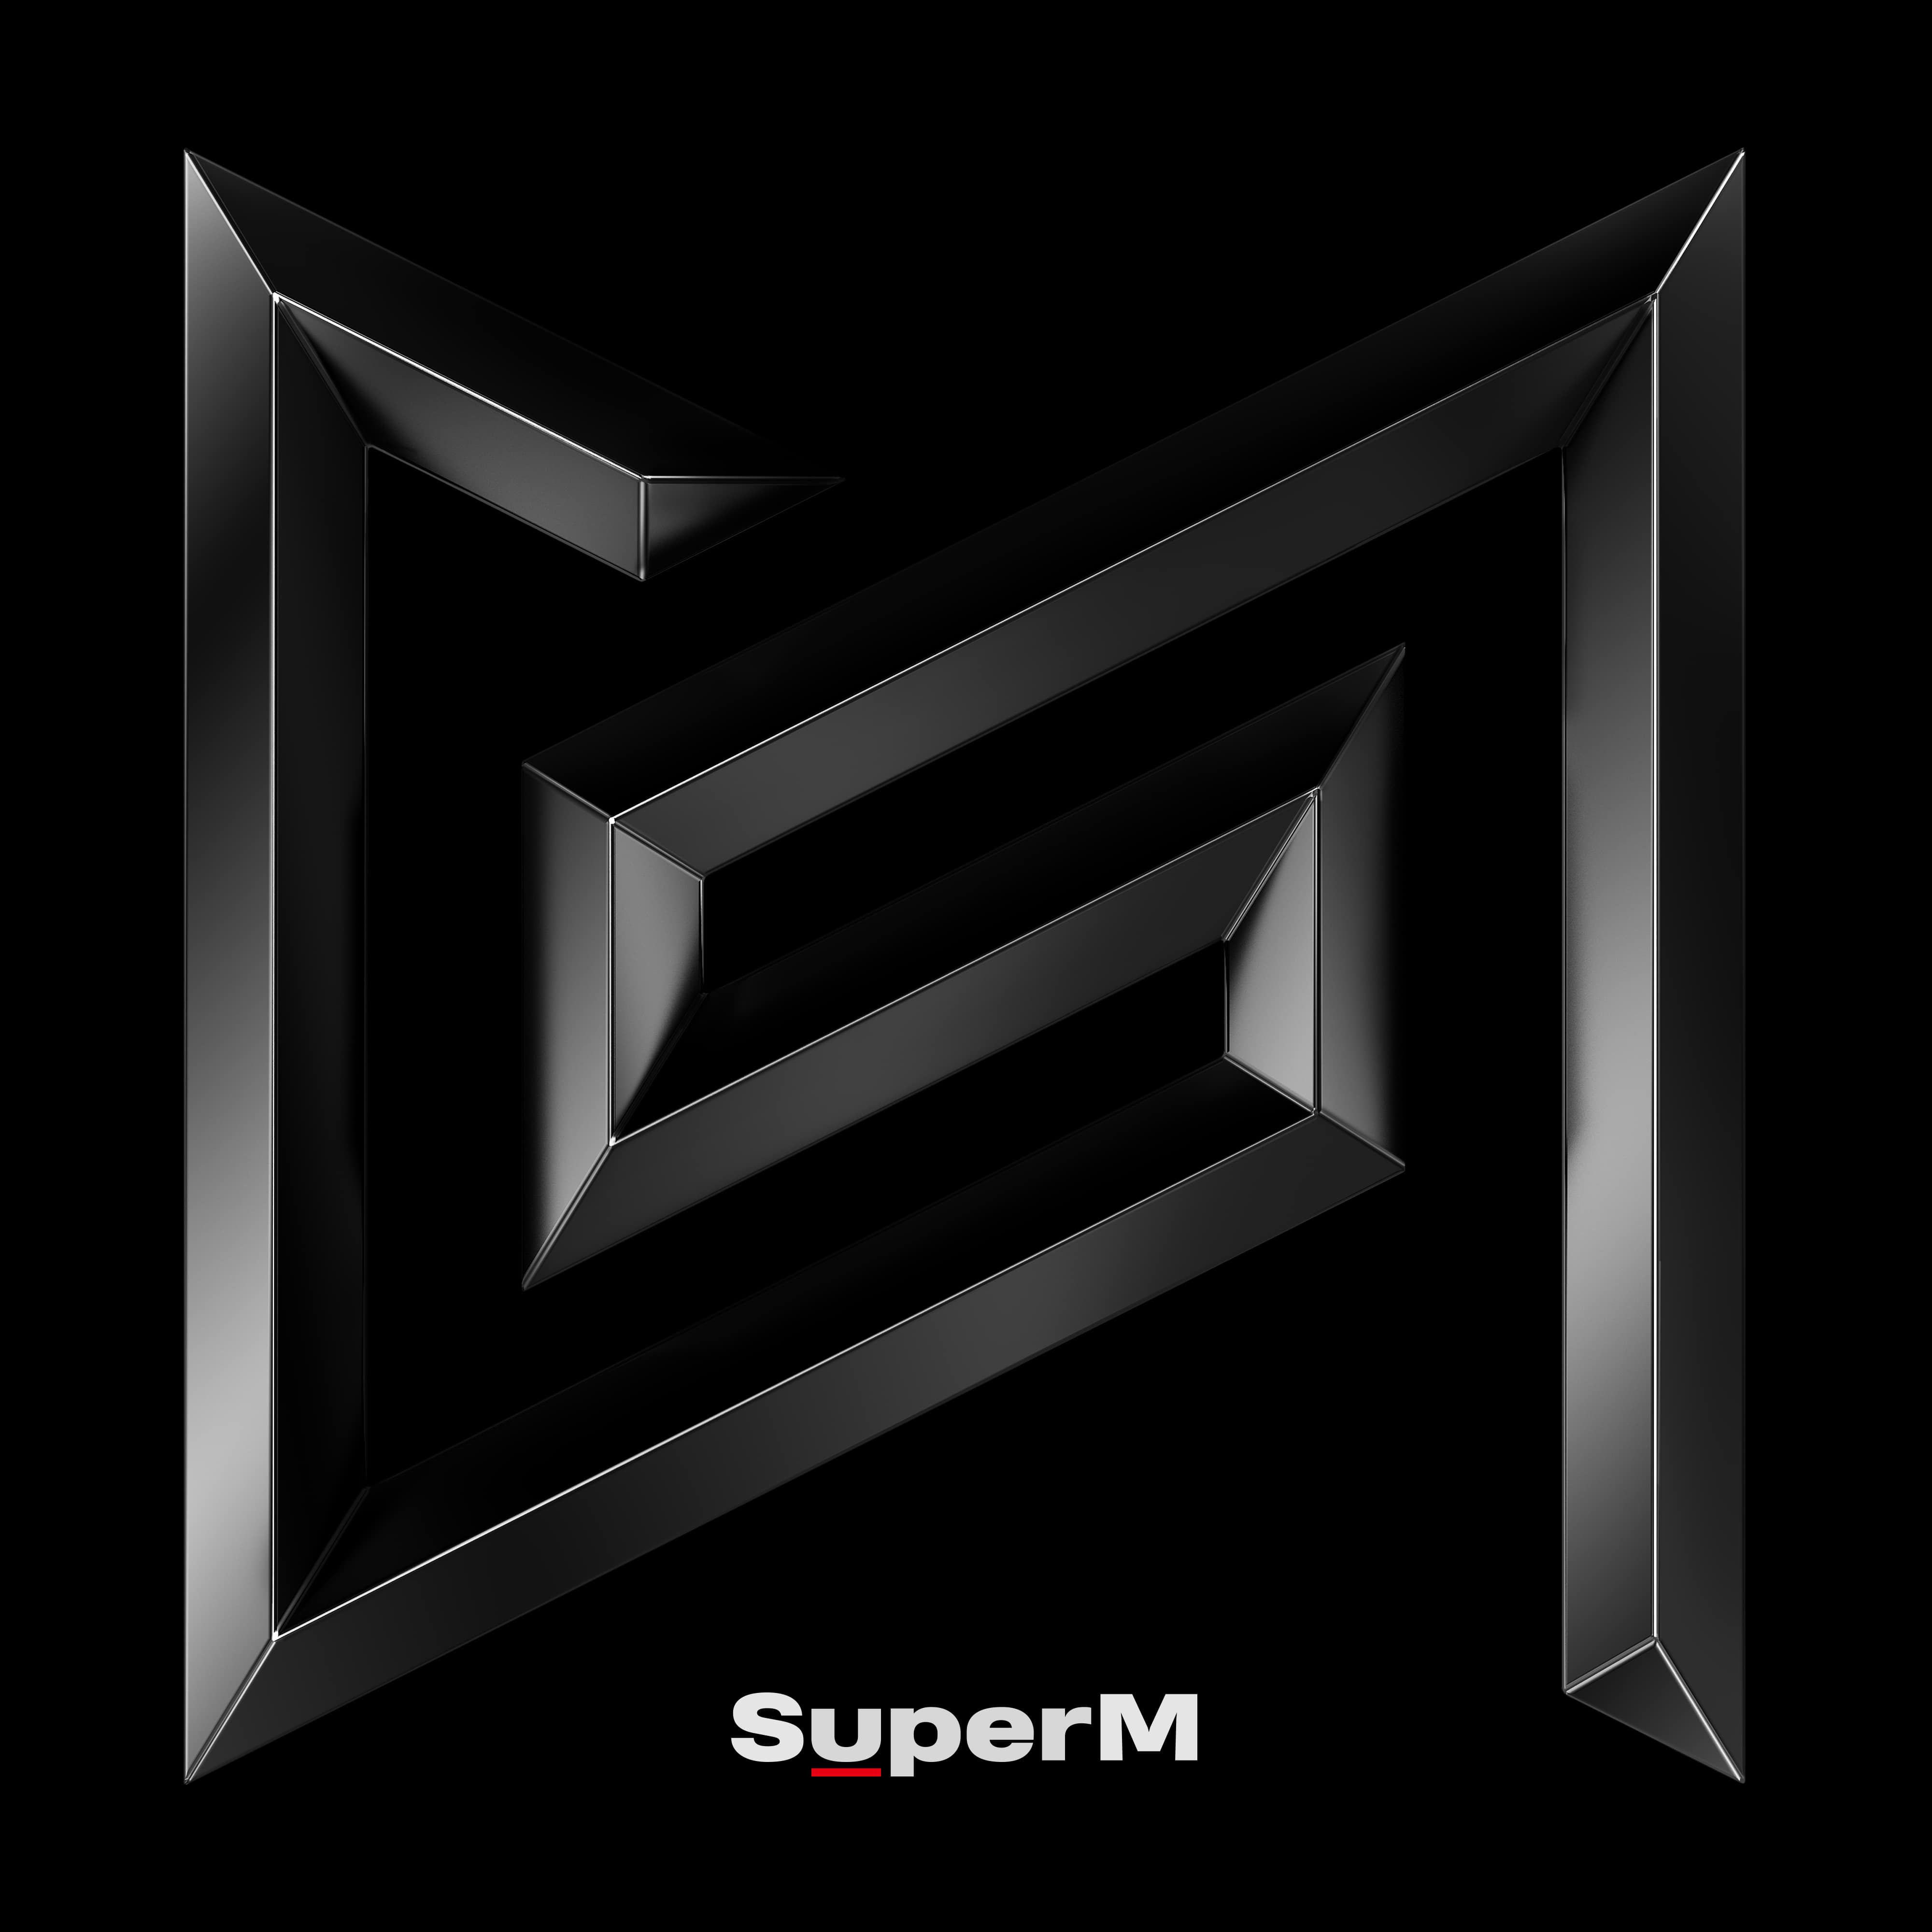 슈퍼엠 (SuperM) - 미니앨범 1집 [SuperM] (랜덤버전)케이팝스토어(kpop store)